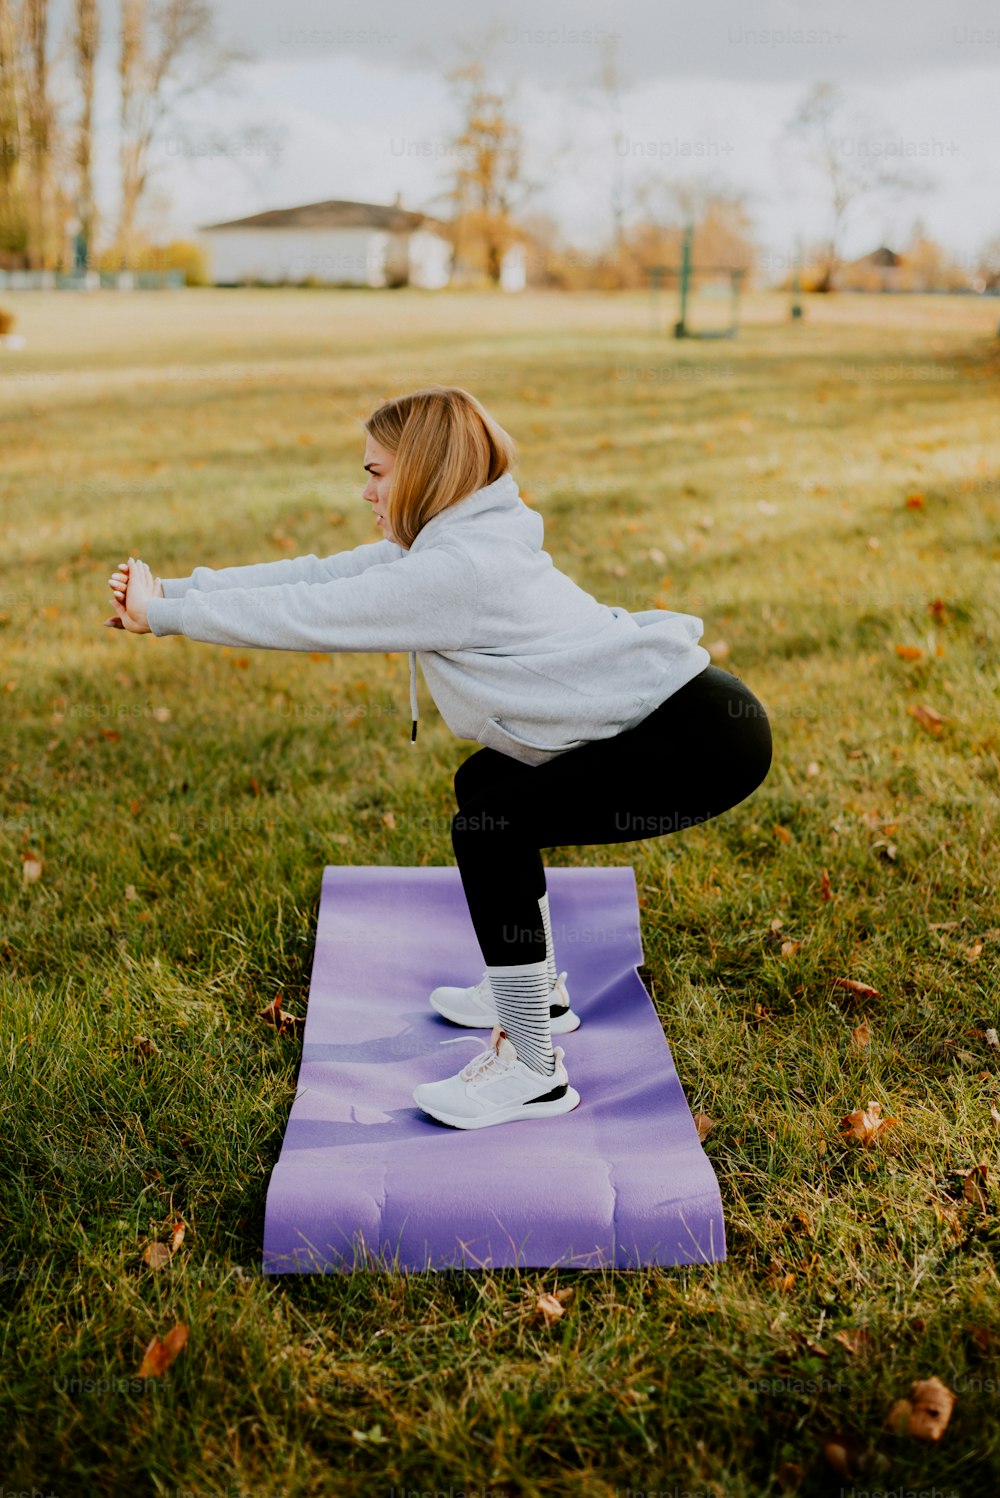 Una mujer haciendo una pose de yoga en una estera púrpura